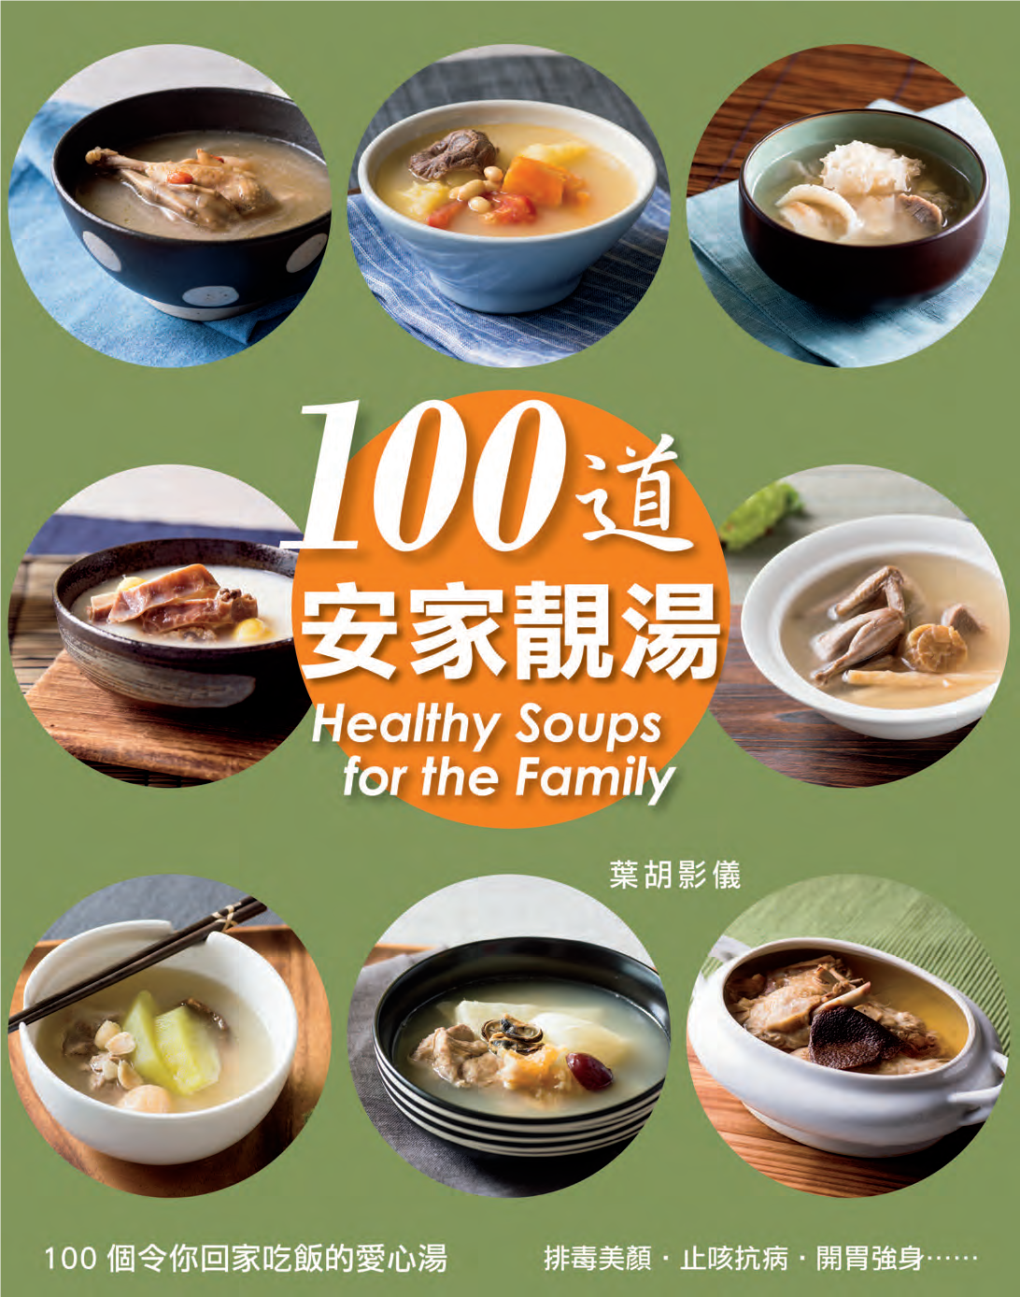 安家靚湯 Healthy Soups for the Family 序